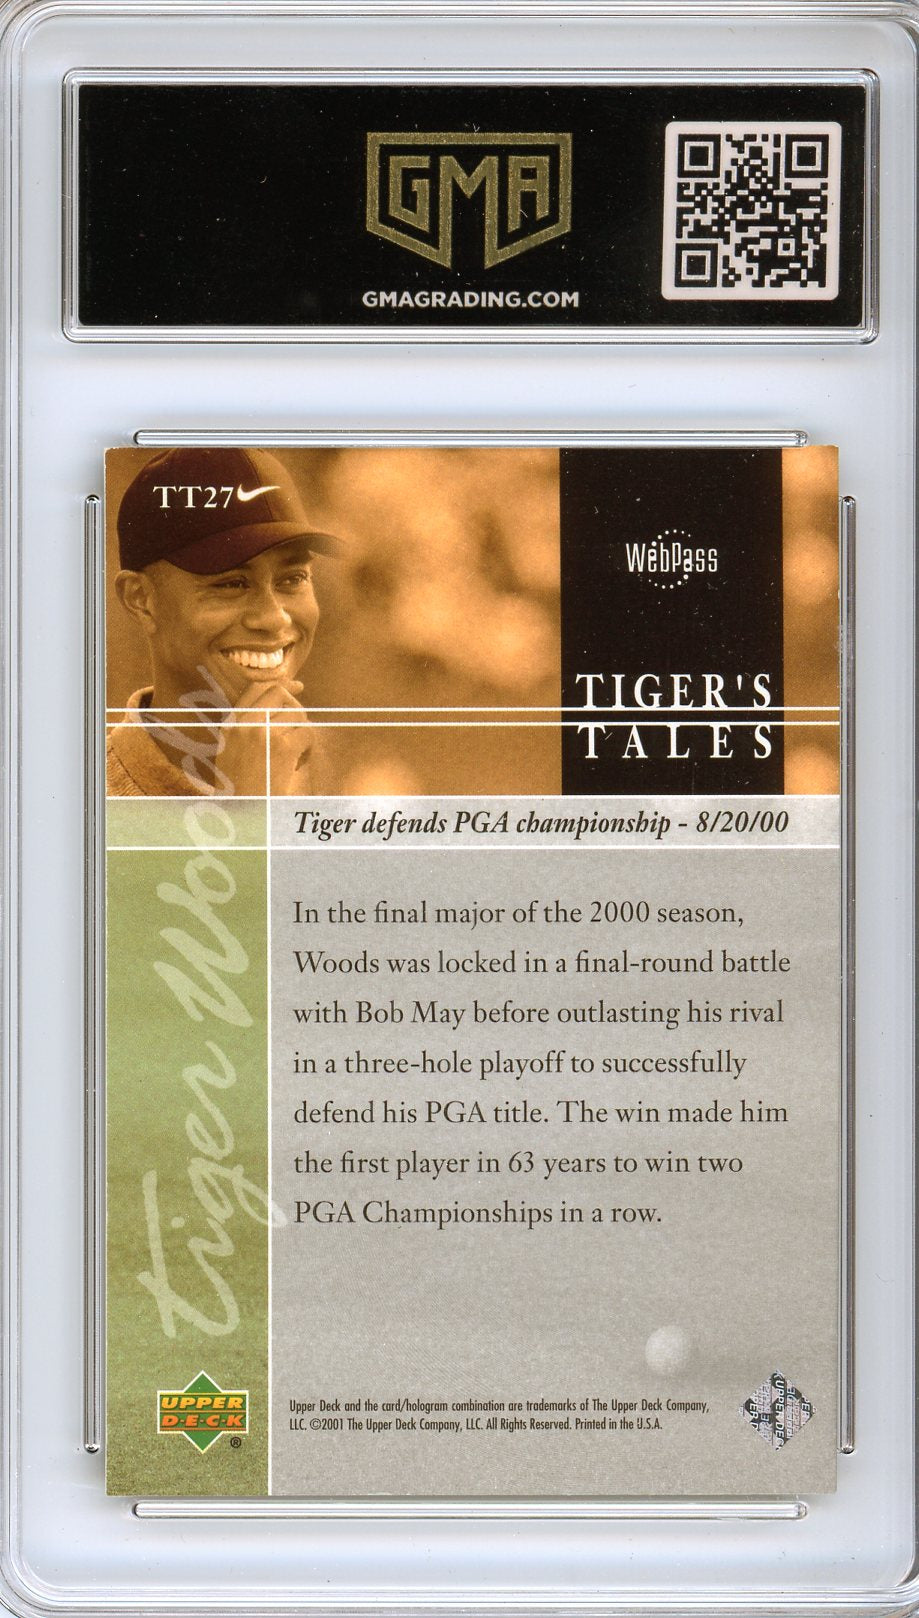 2001 Upper Deck Tiger Woods #TT27 Rookie Card GMA 8.5